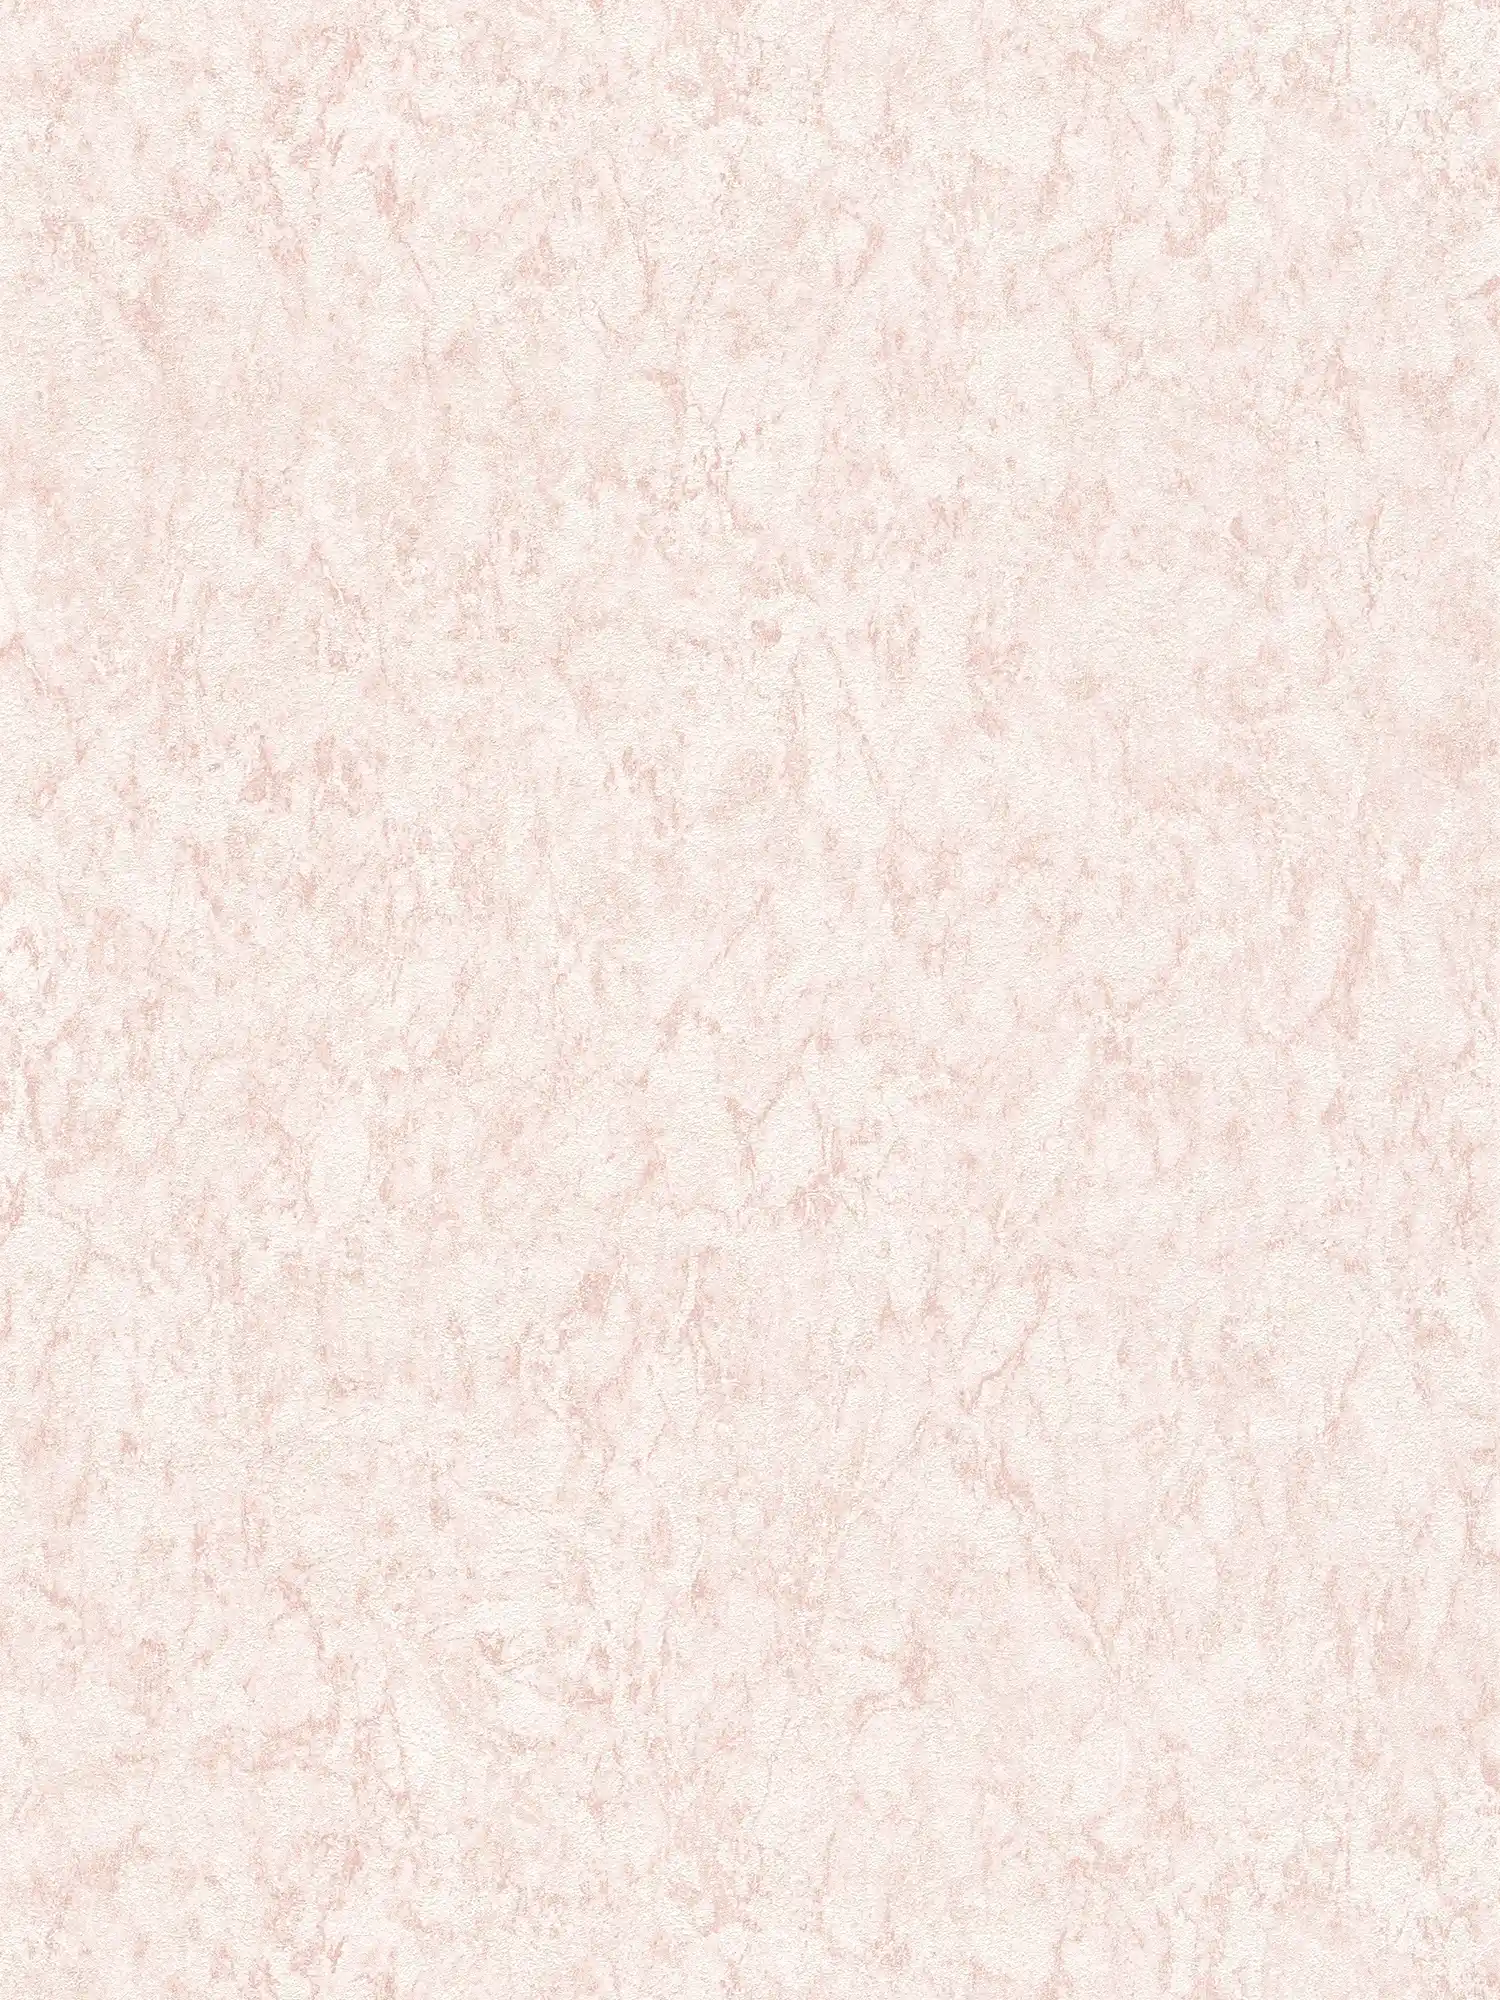 Papier peint uni avec effet texturé & dessin chiné - rose, crème
